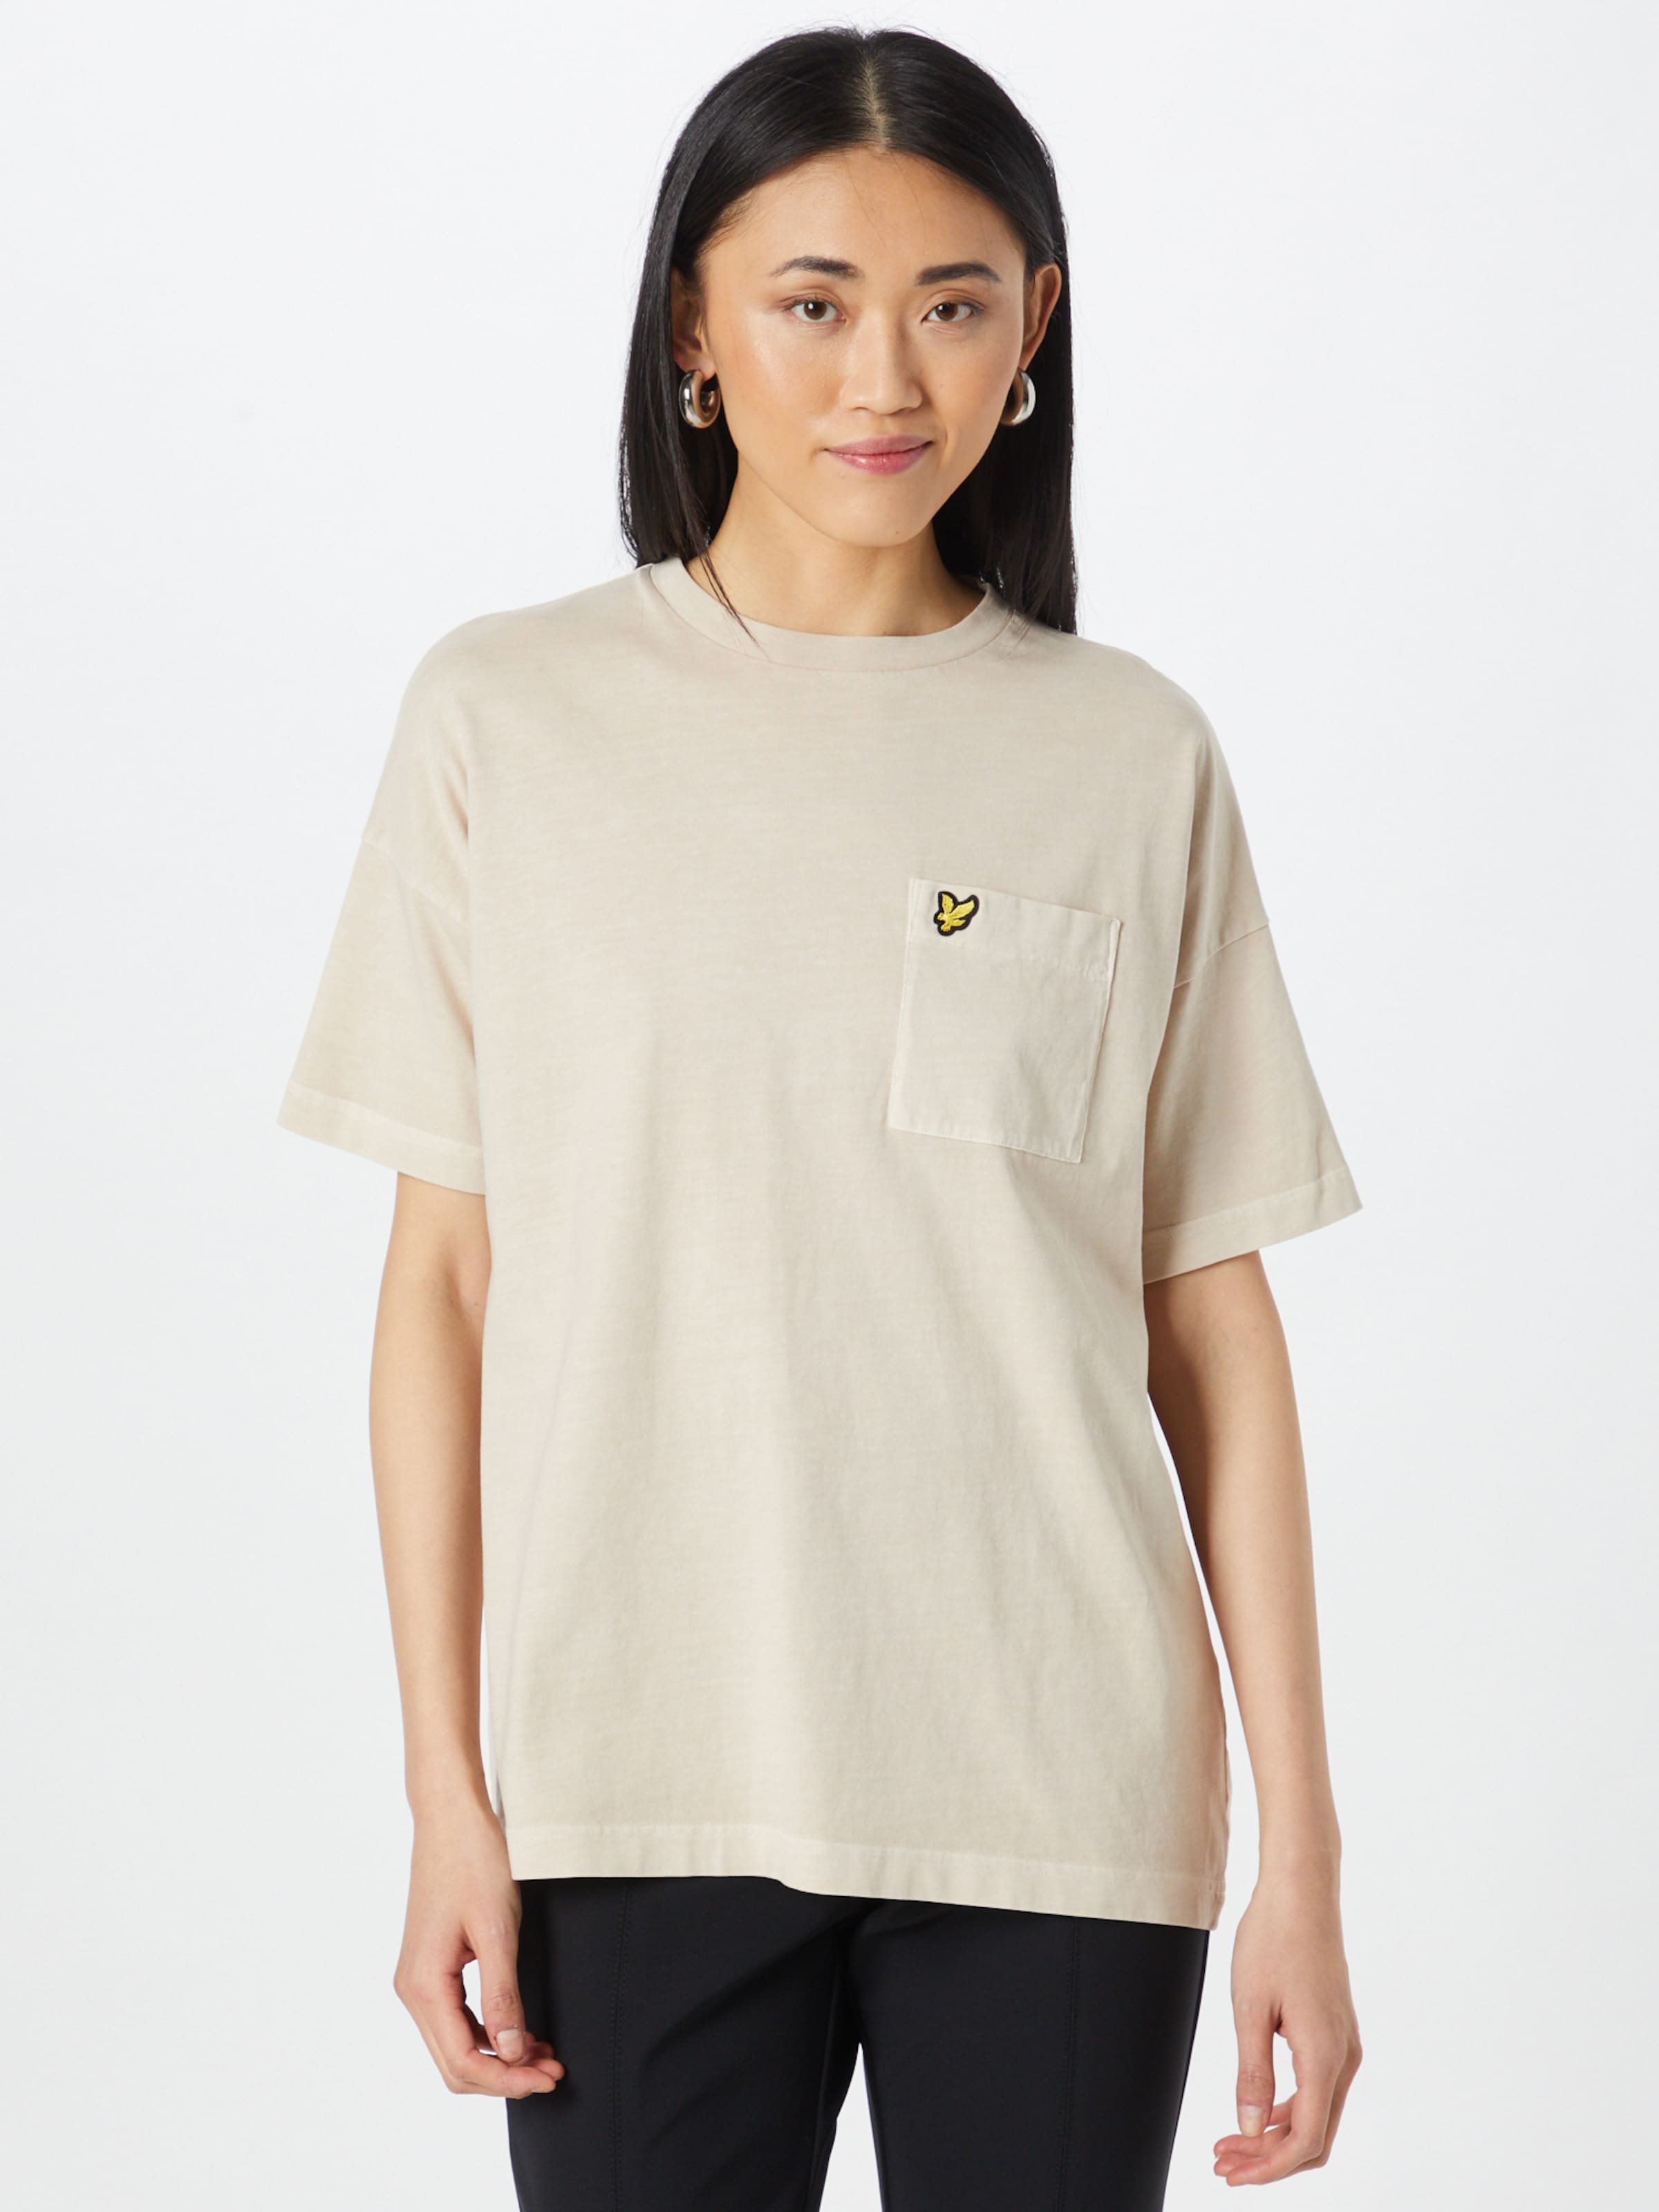 Frauen Shirts & Tops Lyle & Scott T-Shirt in Beige - ZW02909